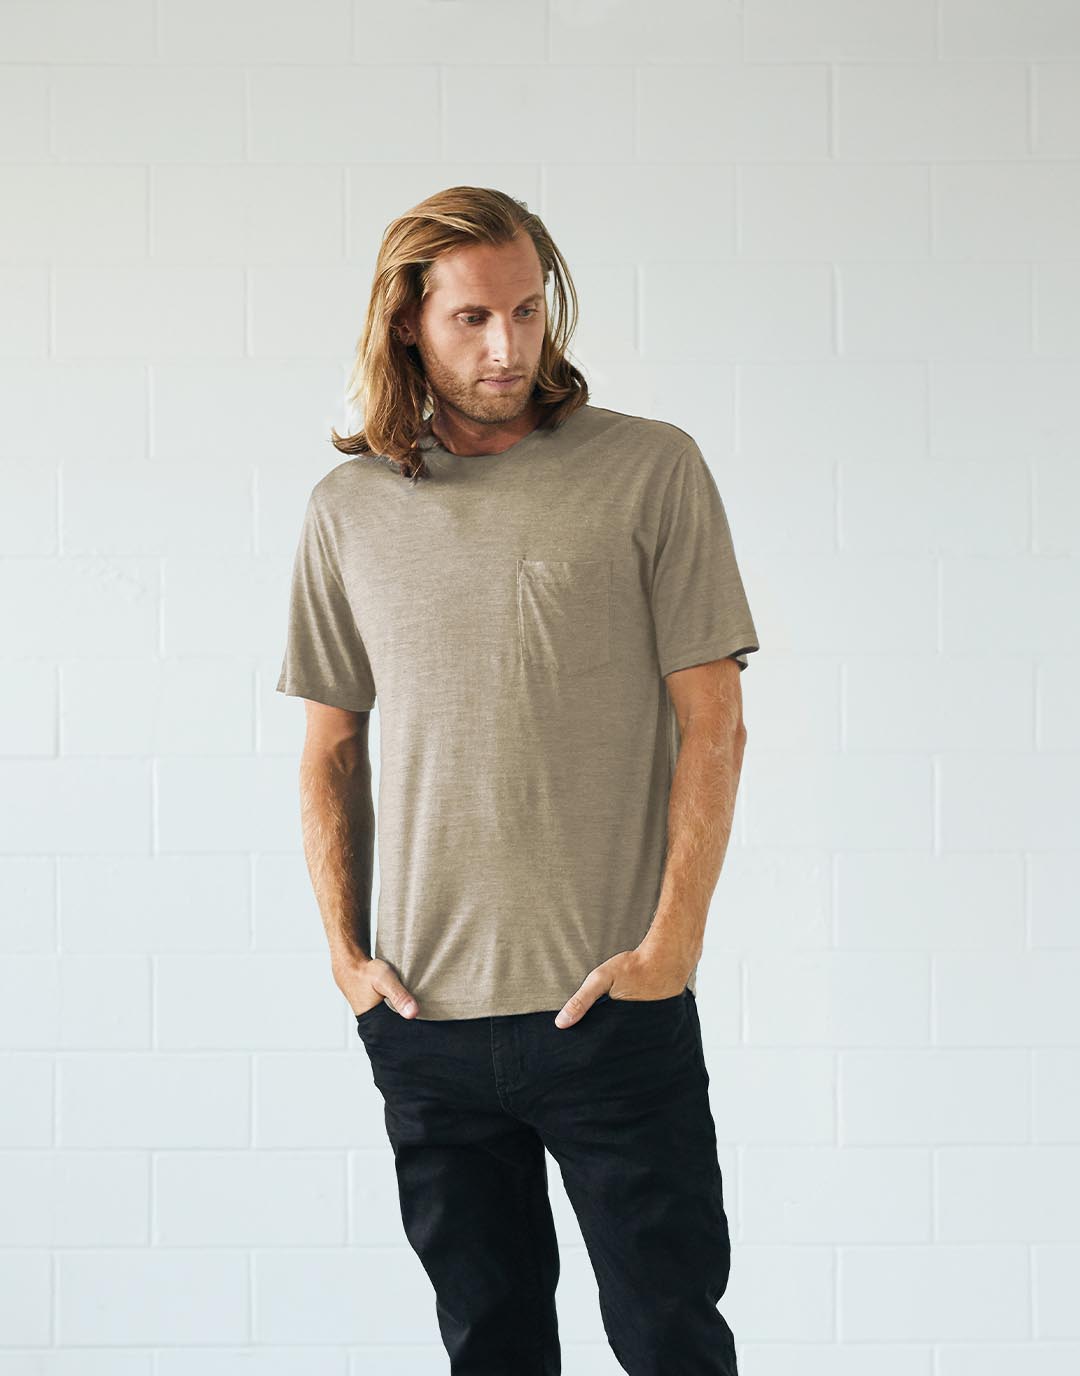 Un homme debout qui porte un t-shirt teint avec des pigments végétaux naturels de provenance durable